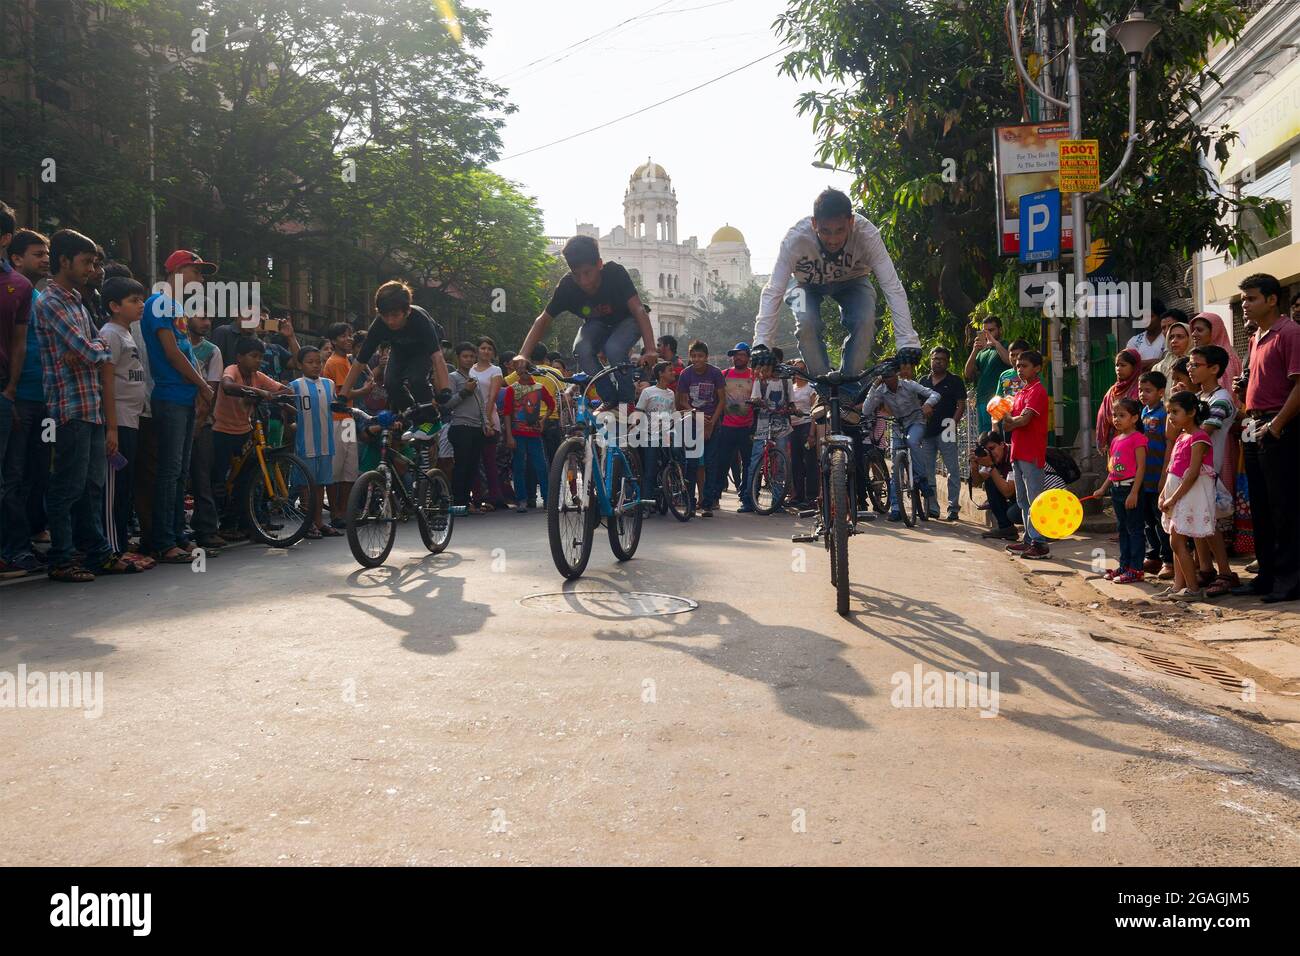 KALKUTTA, WESTBENGALEN, INDIEN - 1. MÄRZ 2015 : drei Radfahrerknechte zeigen sich in der Park Street für die Veranstaltung „Happy Street“ - eine Veranstaltung allowi Stockfoto